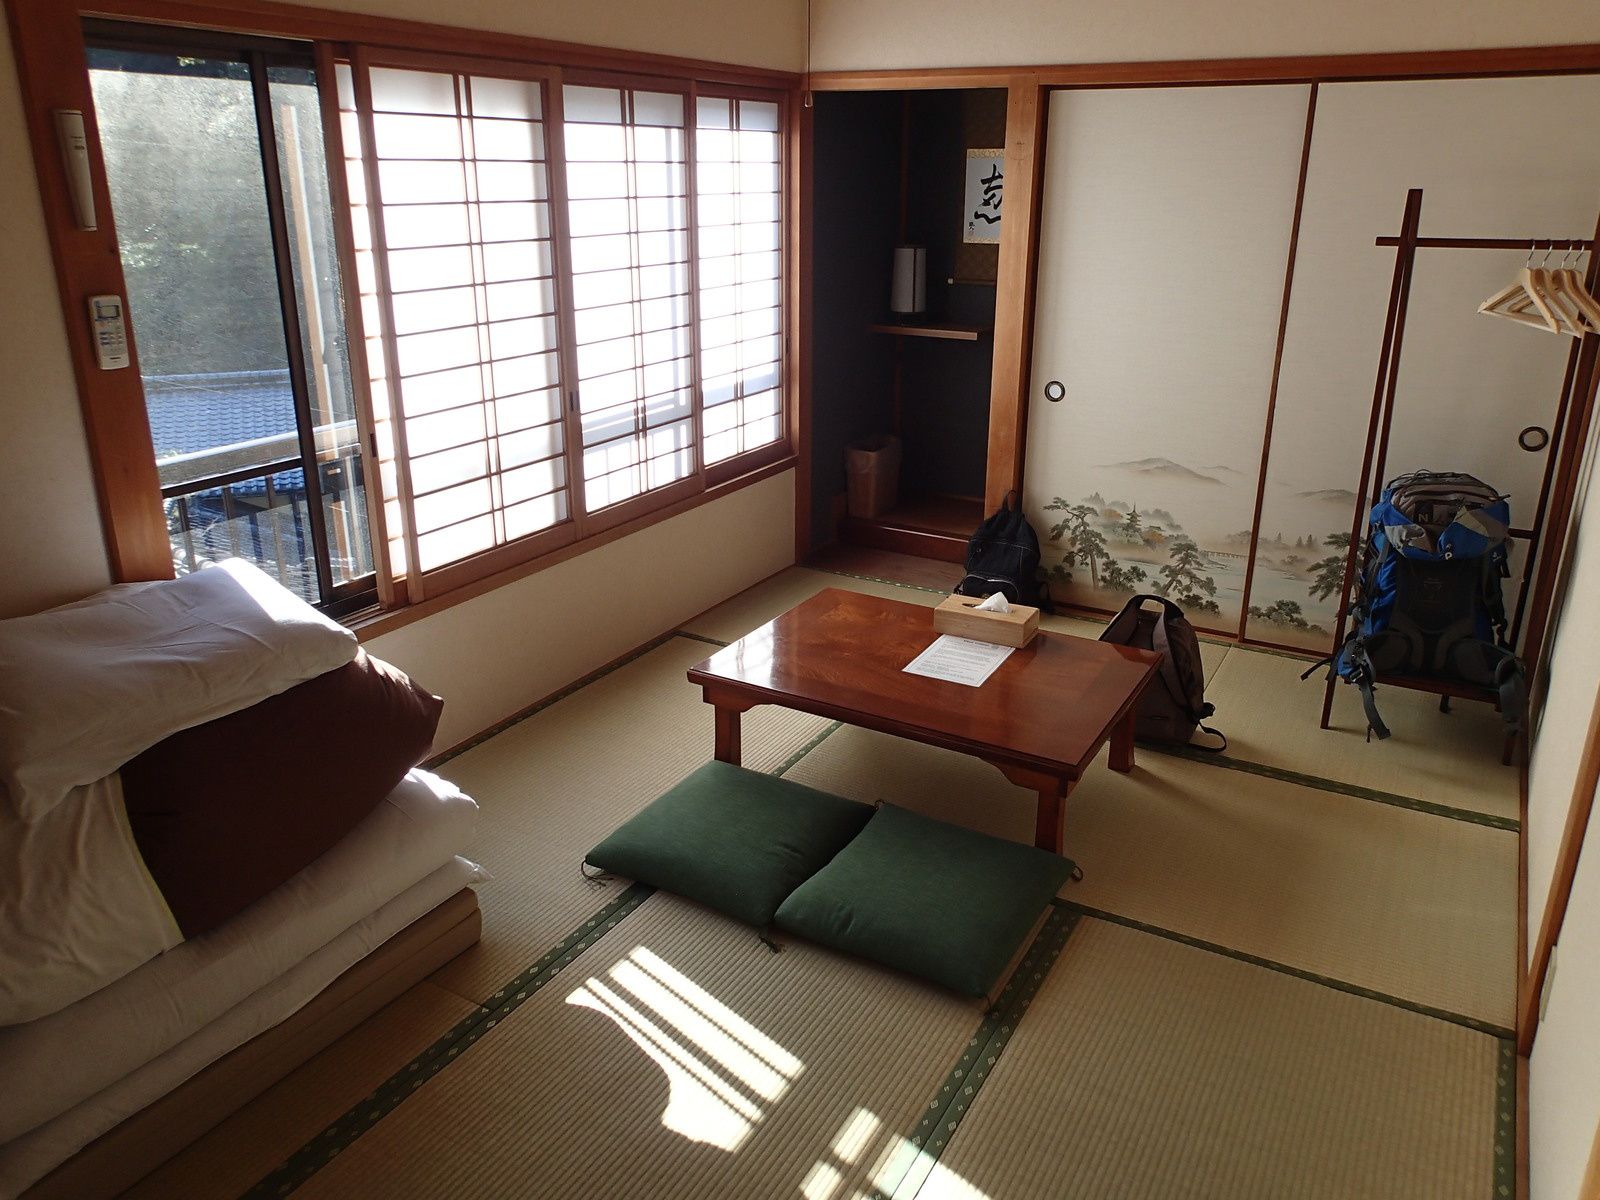 Notre chambre typiquement japonaise et la salle commune avec le foyer central